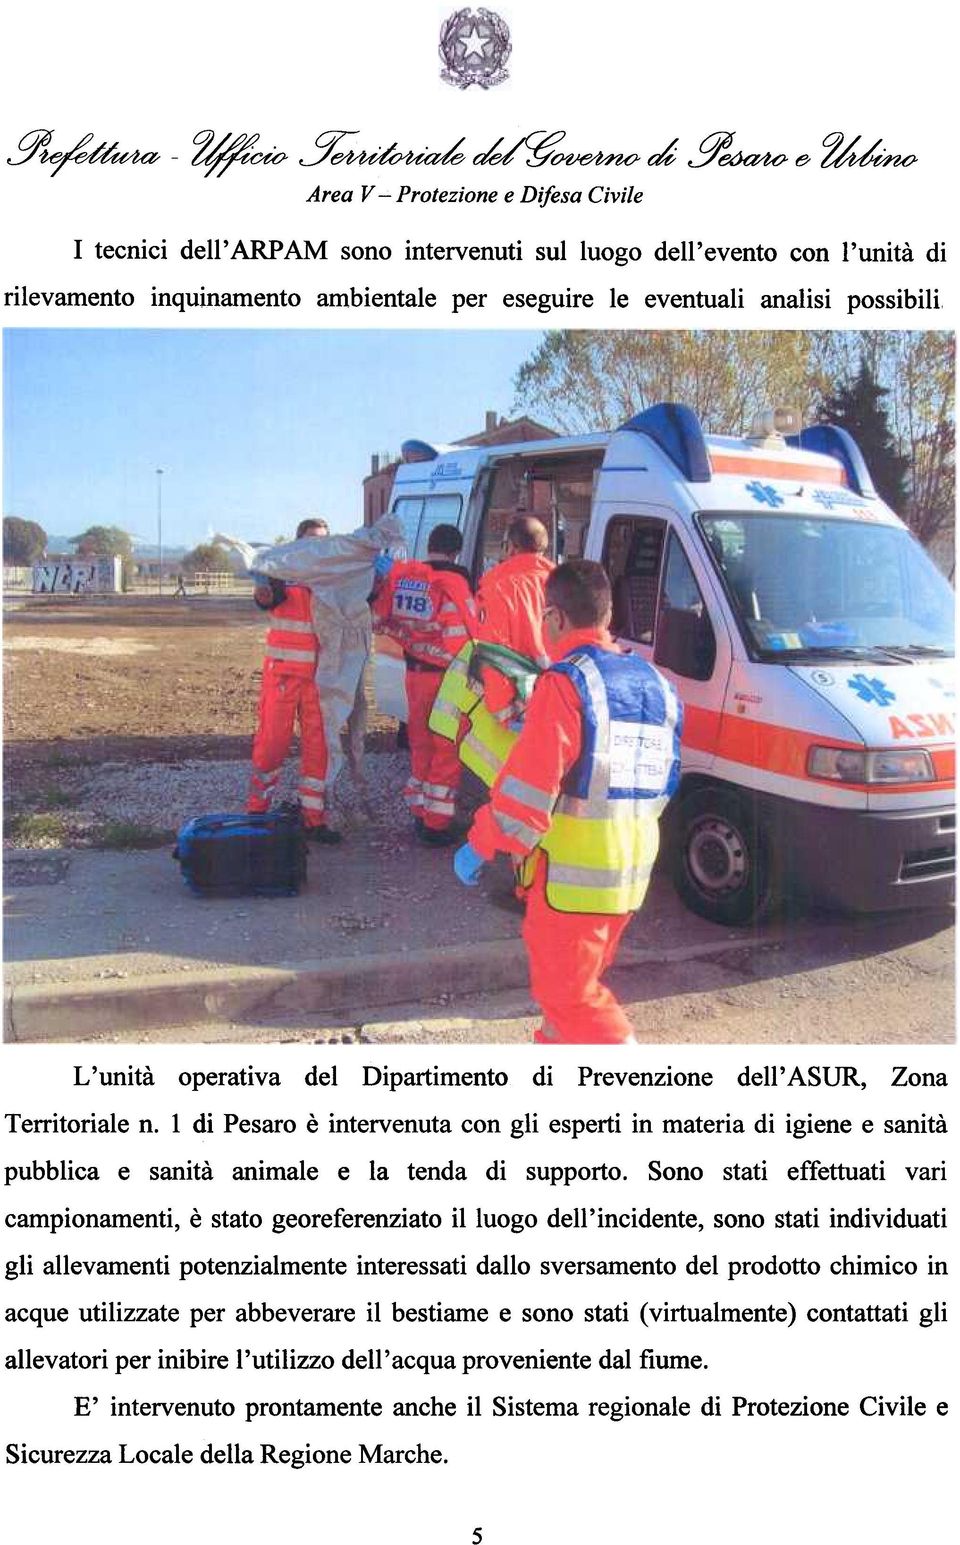 Prevenzione dell' ASUR, Zona Dipartimento Territoriale n. 1 di Pesaro è intervenuta con gli esperti in materia di igiene e sanità pubblica e sanità animale e la tenda di supporto.